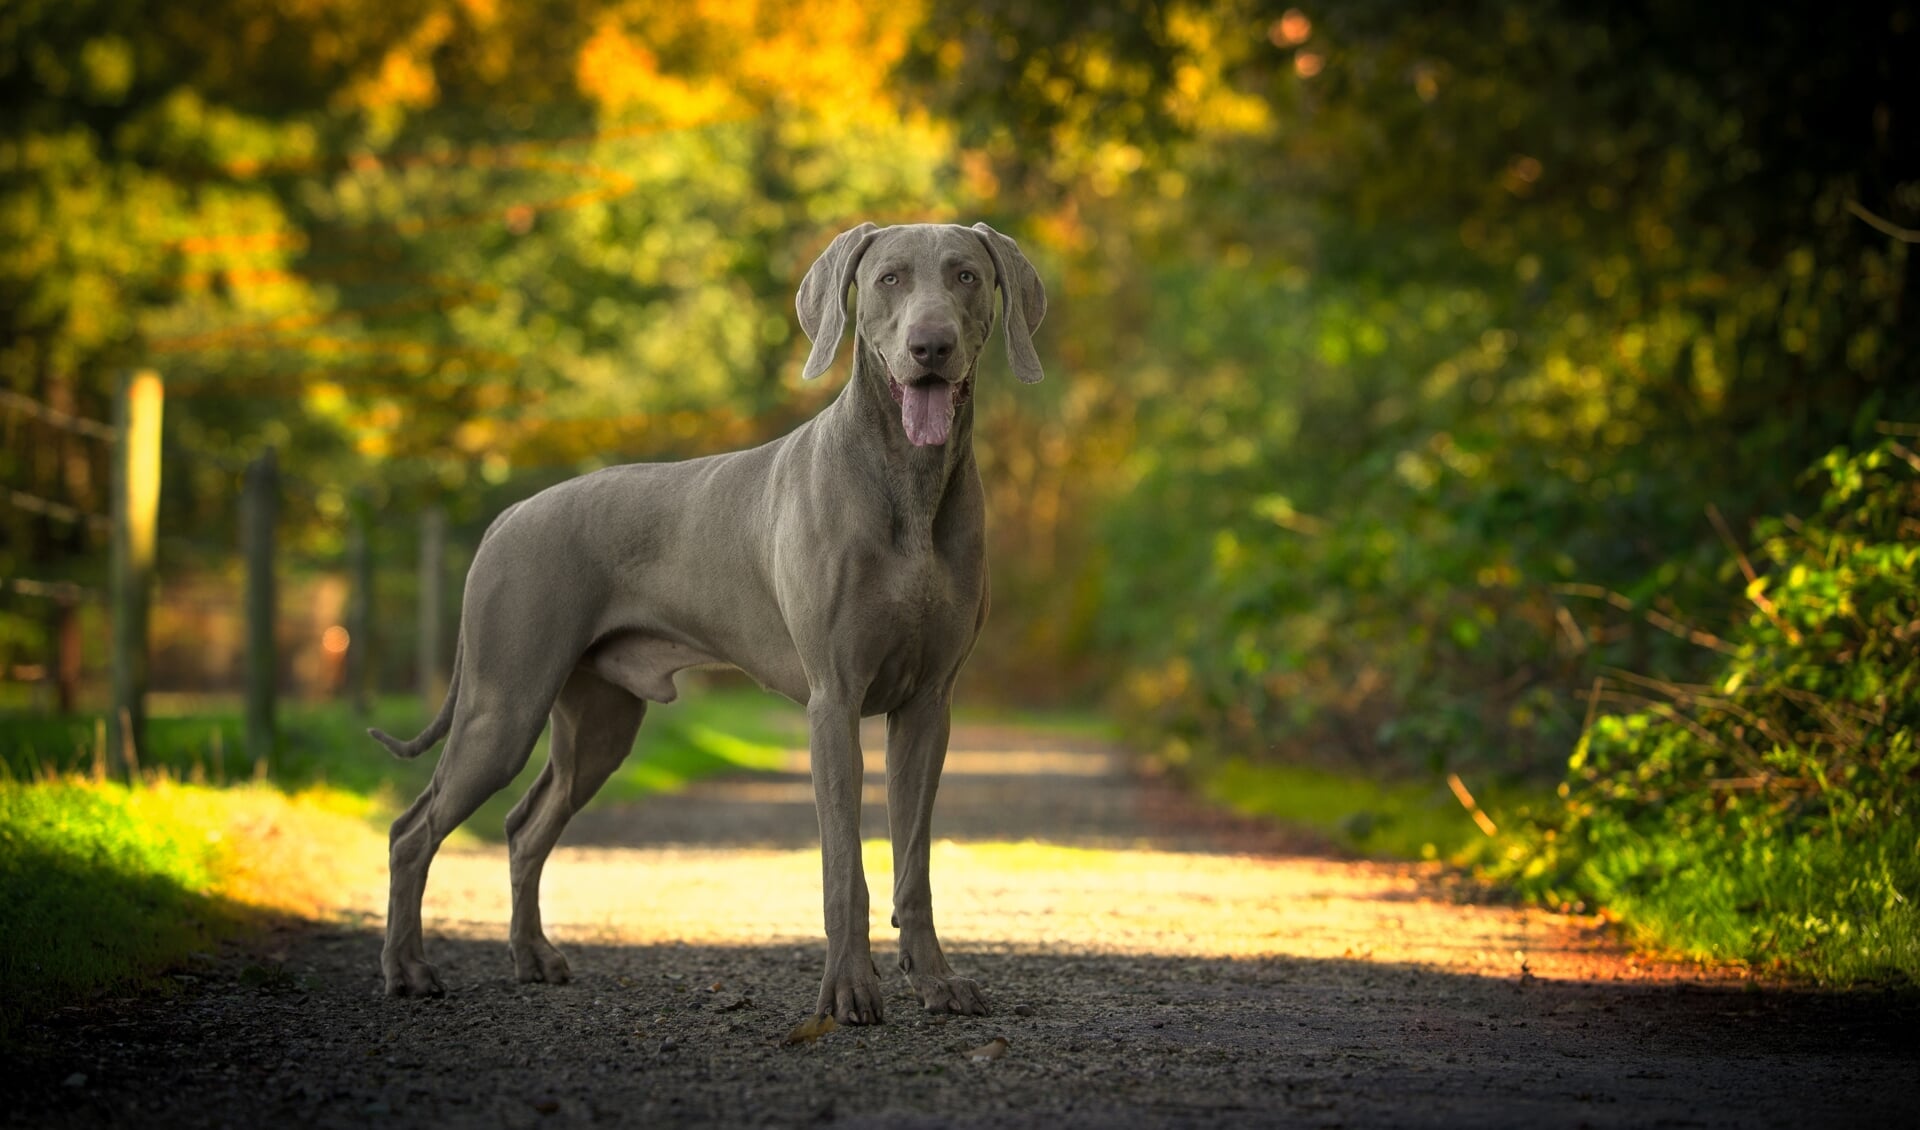 GreySon de mooiste hond van Nederland? (Foto: Henk van Hoek)